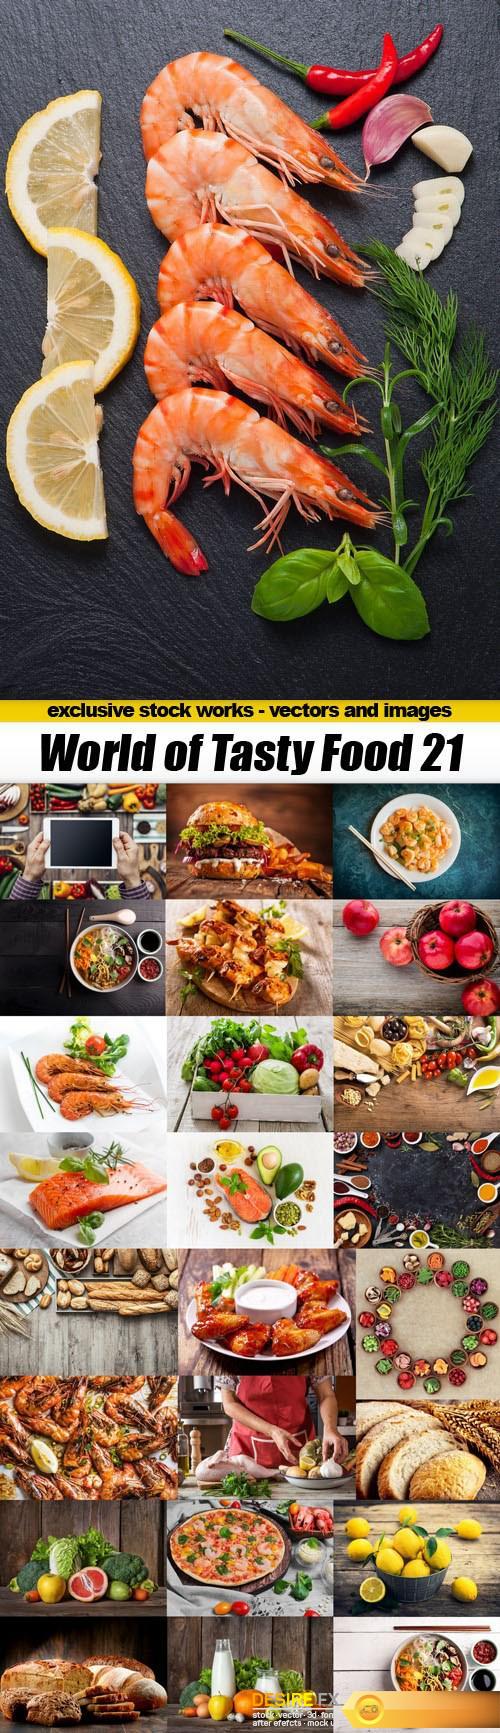 World of Tasty Food 21 - 25xUHQ JPEG